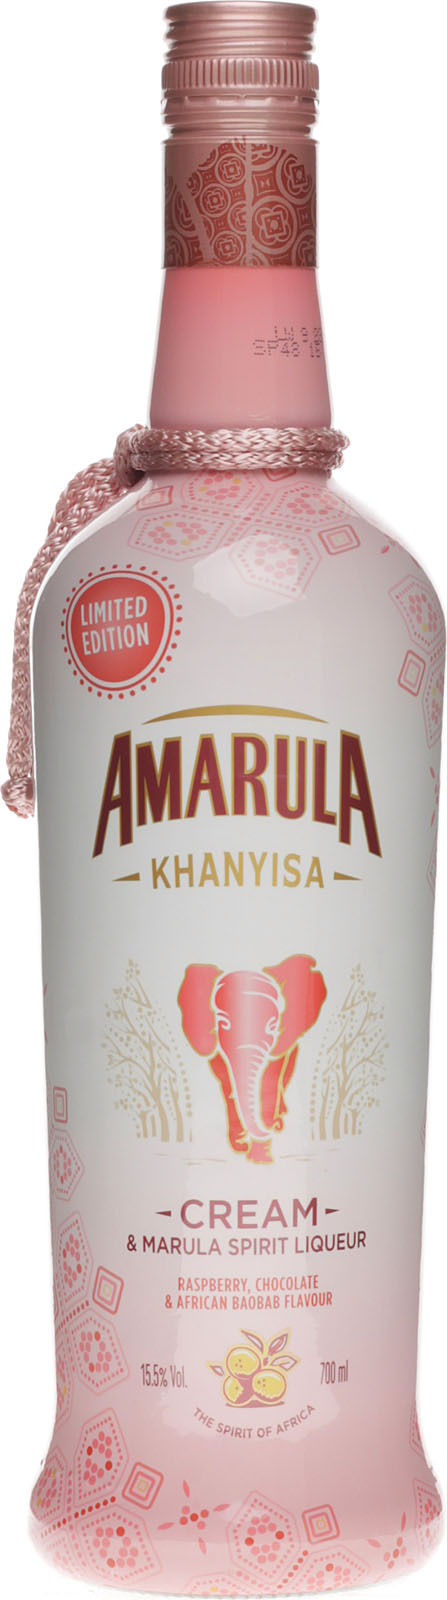 k and Amarula im Raspberry, Shop Likör Chocolate Baobab